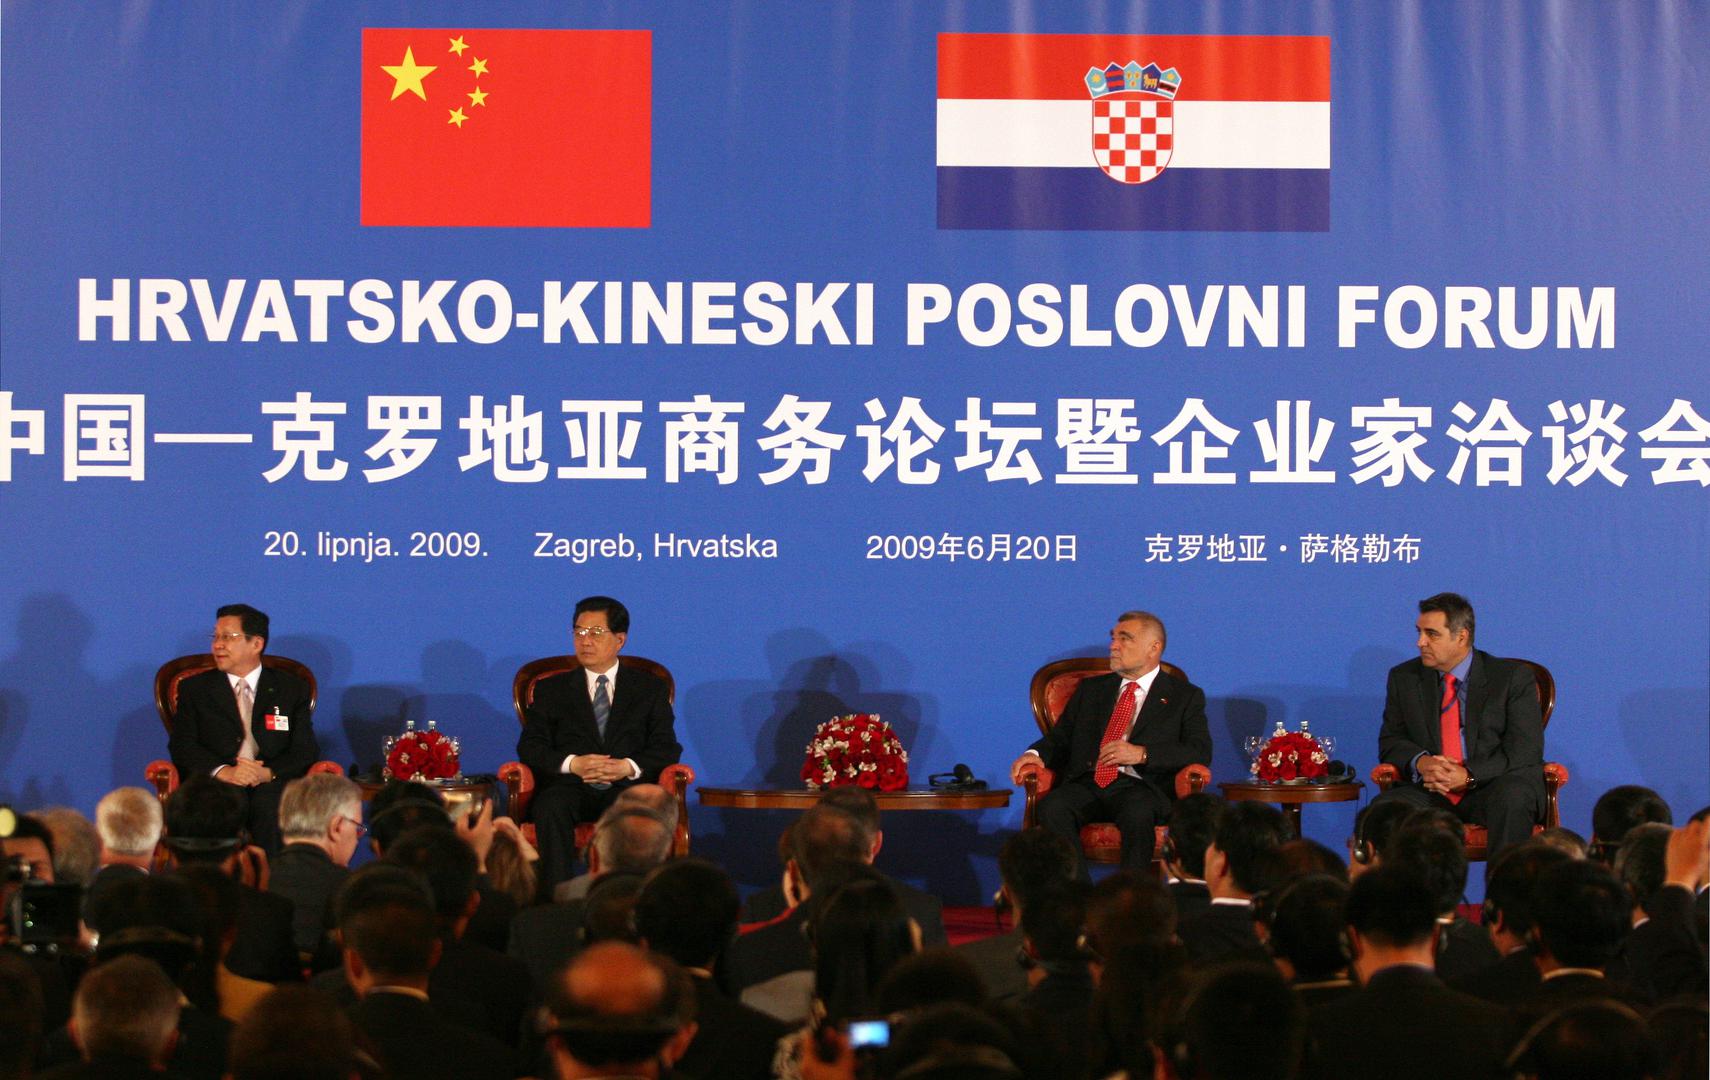 Hrvatsko-kineski poslovni forum iz 2009. na koji je došao i tadašnji kineski predsjednik Hu Jintao ŽARKO BAŠIĆ/PIXSELL